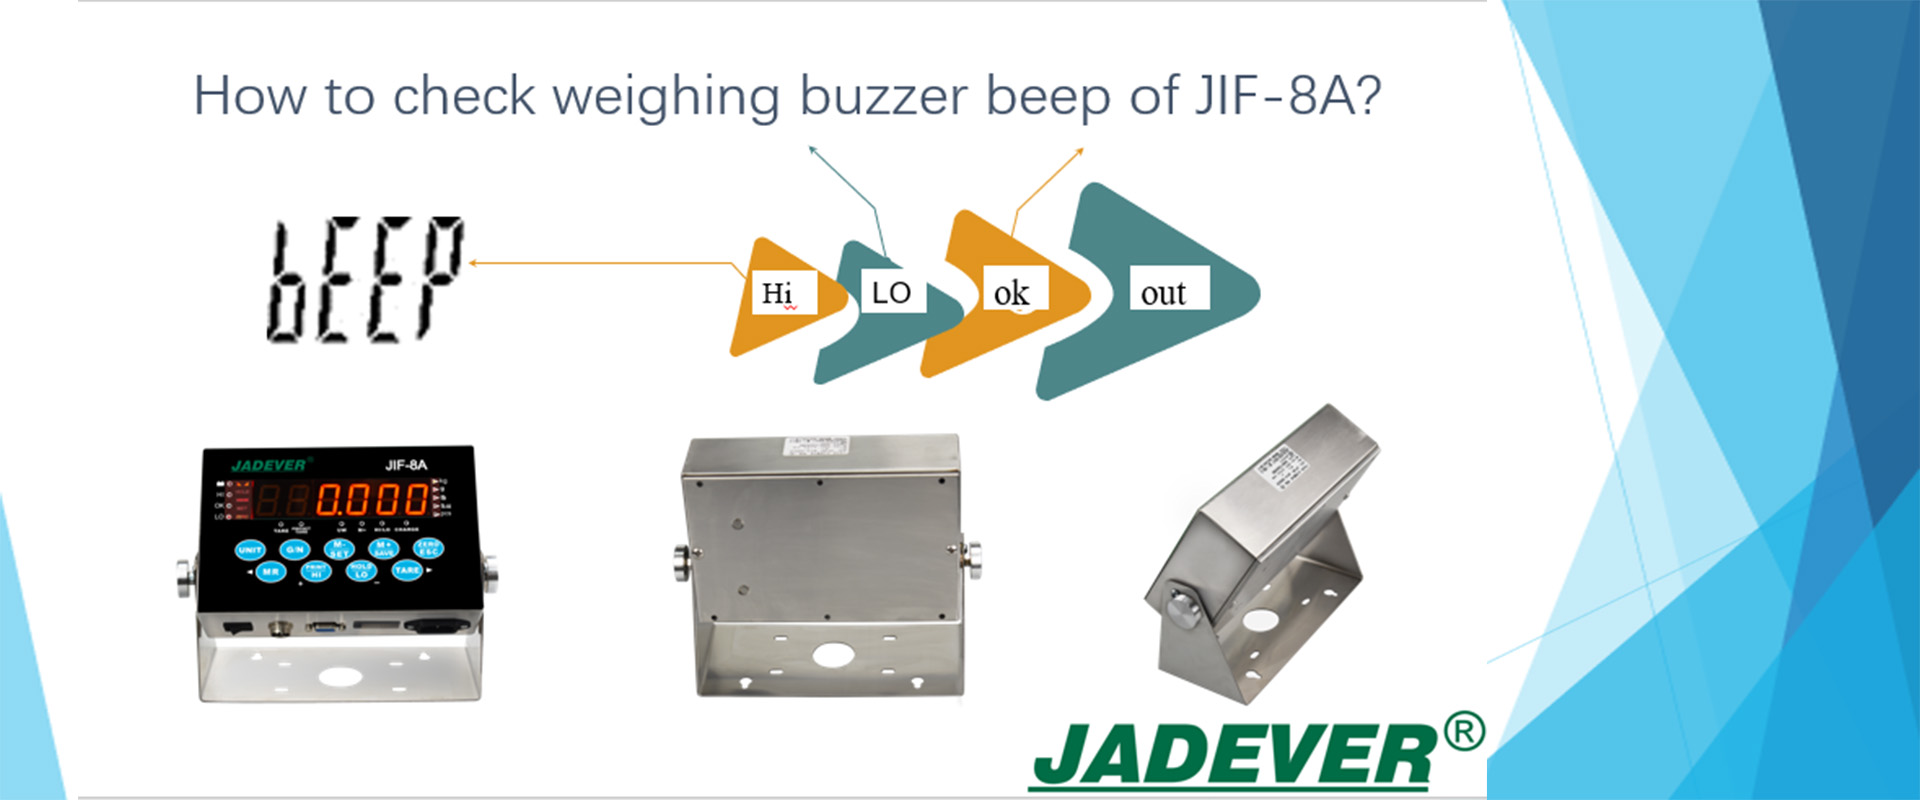 ¿Cómo comprobar el pitido del zumbador de pesaje de JIF-8A?
